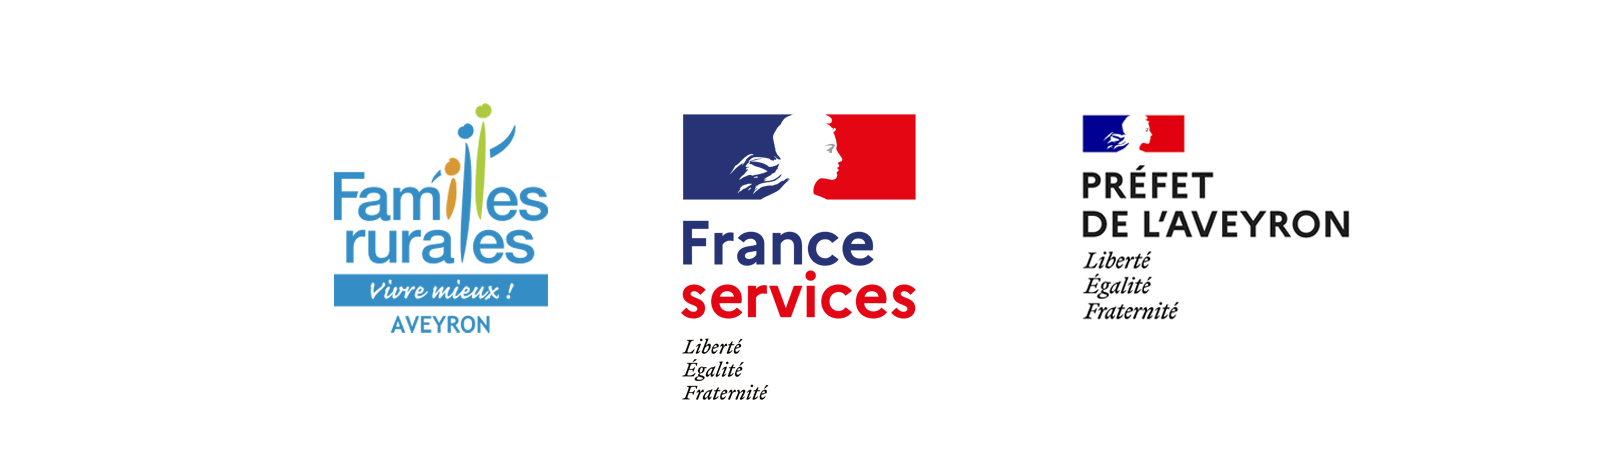 France Services Aveyron